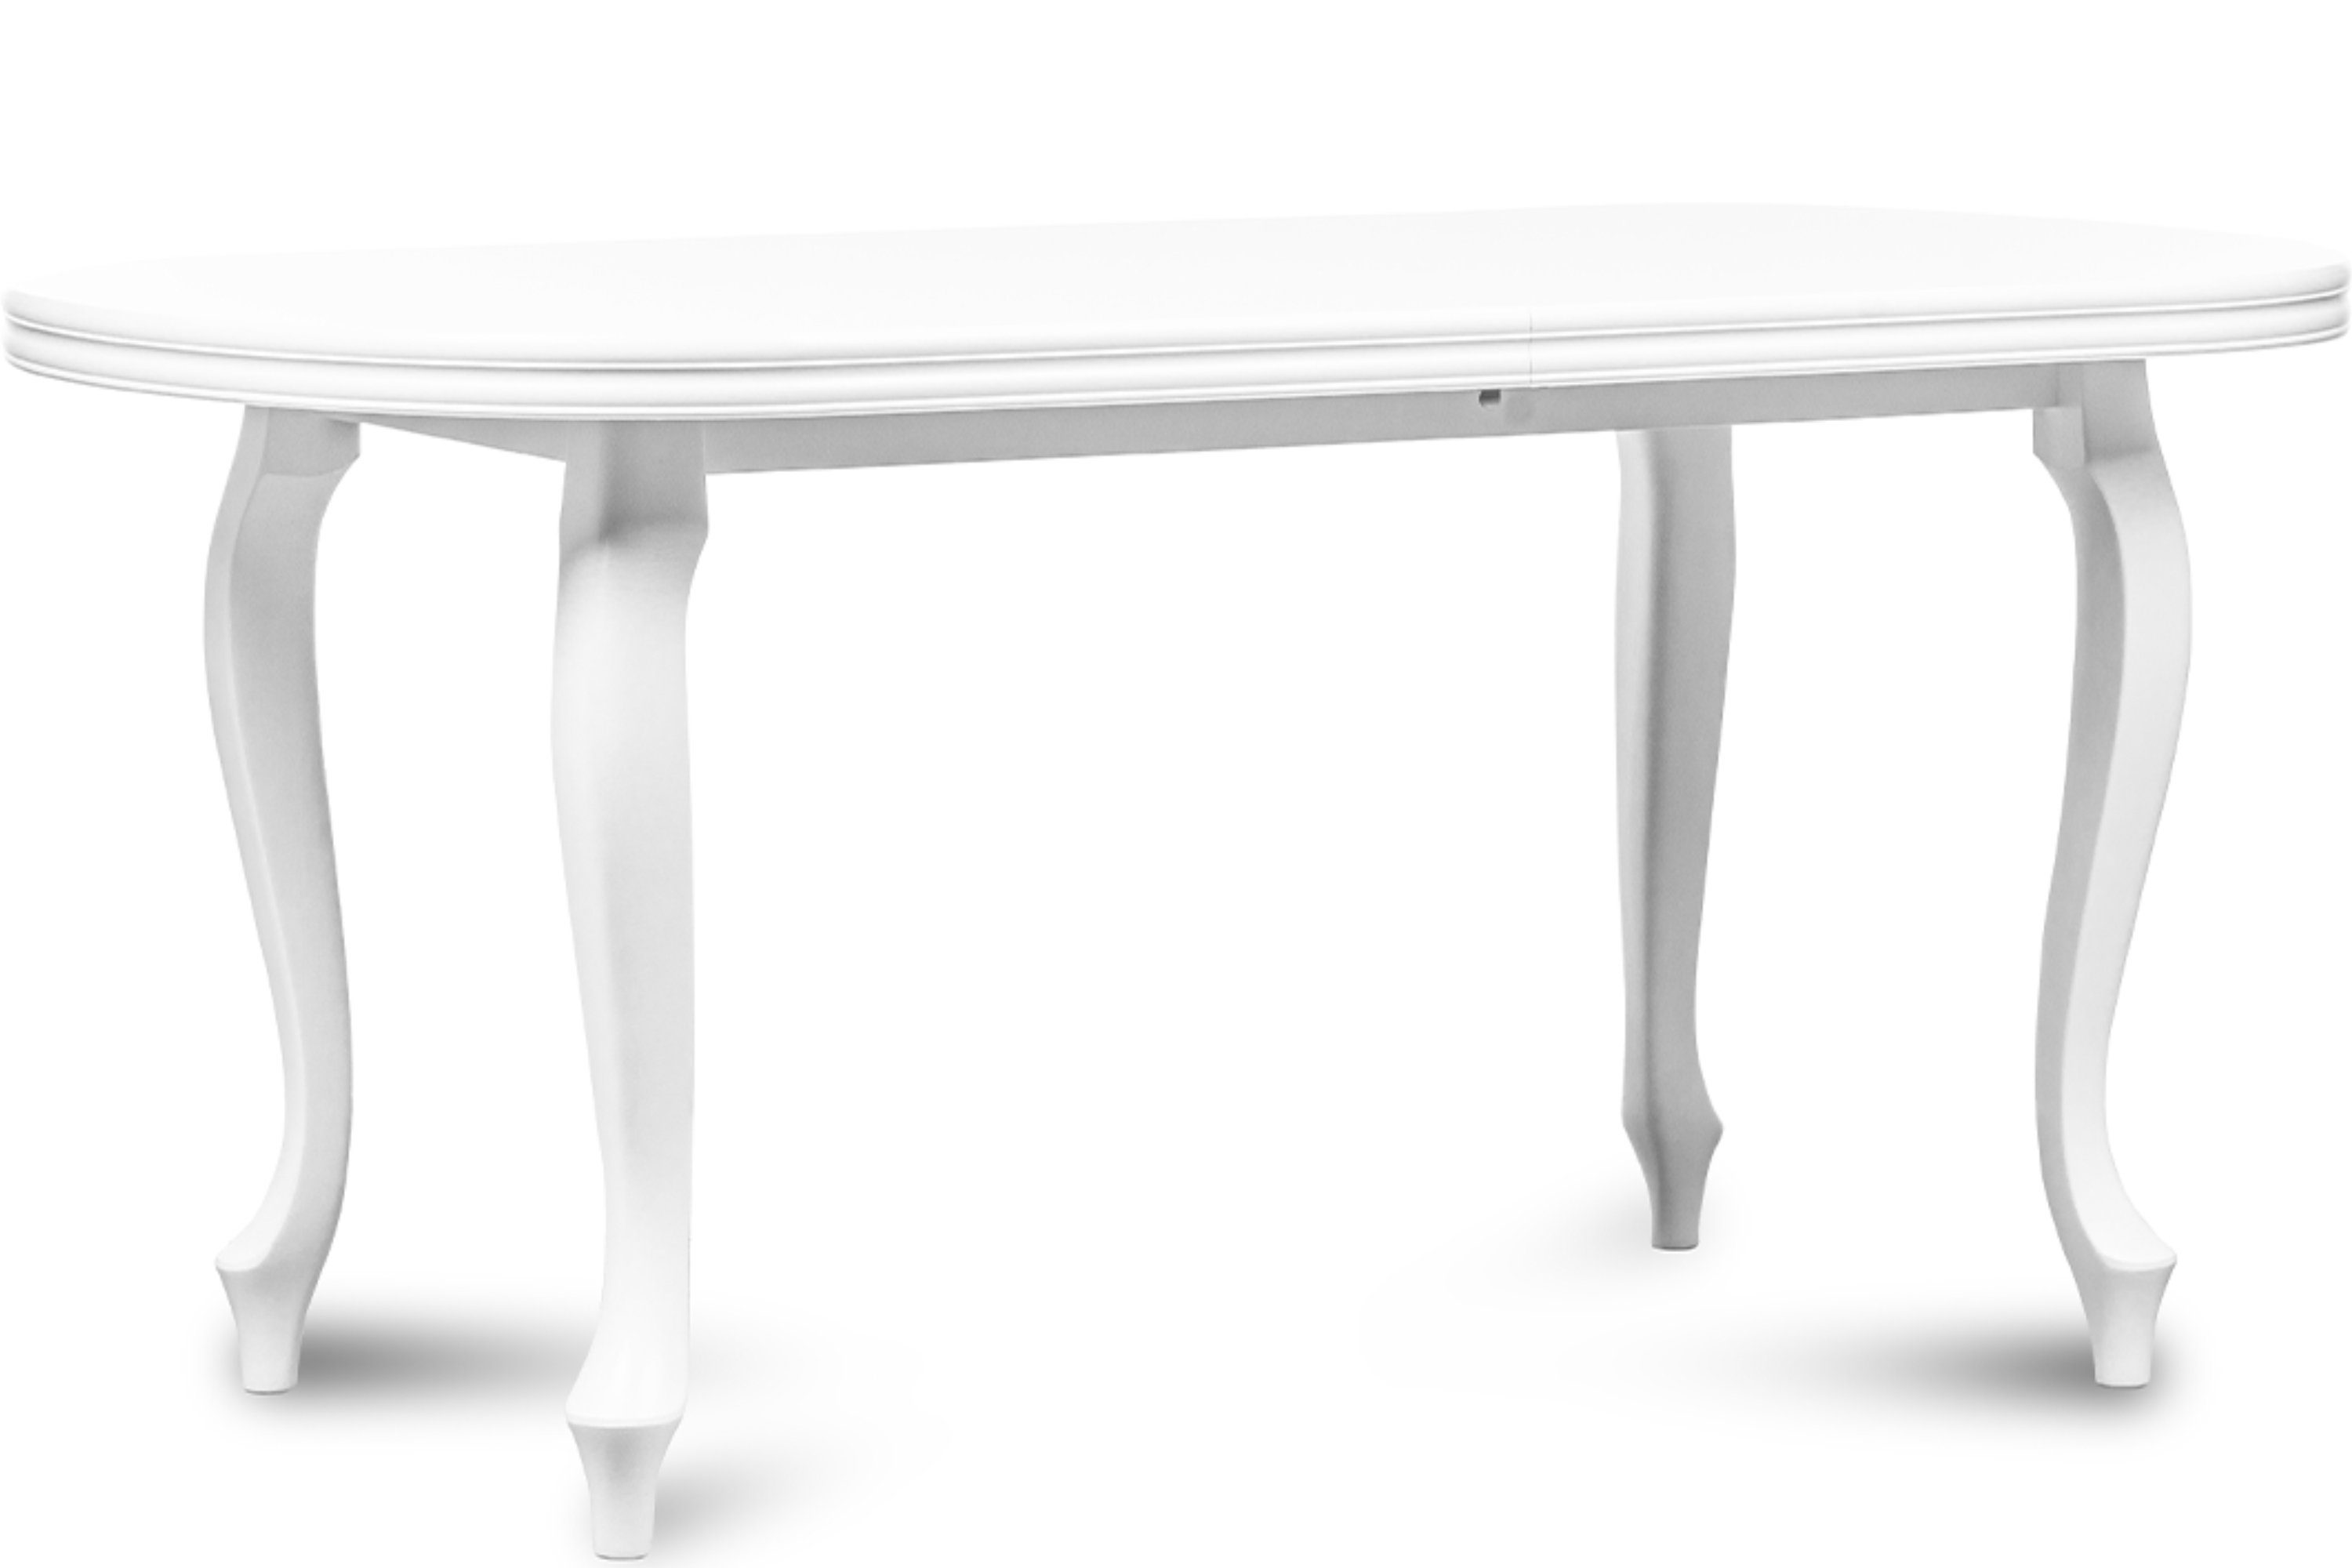 Konsimo Esstisch ALTIS Esszimmertisch Küchentisch 200x100cm, ausziehbar bis 300cm, oval weiß | weiß | weiß